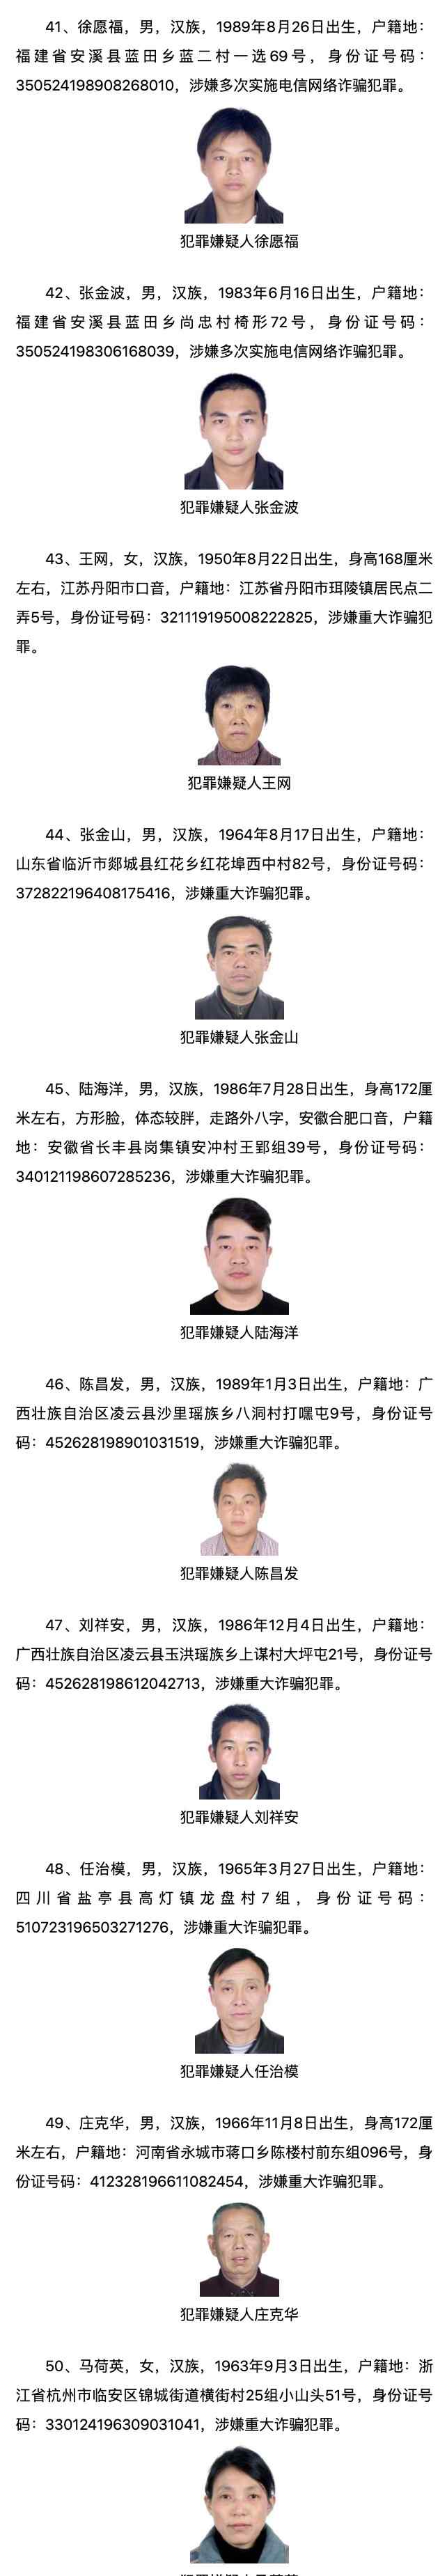 中国公安网通缉犯 公安部发布A级通缉令！公布50名重大在逃人员名单